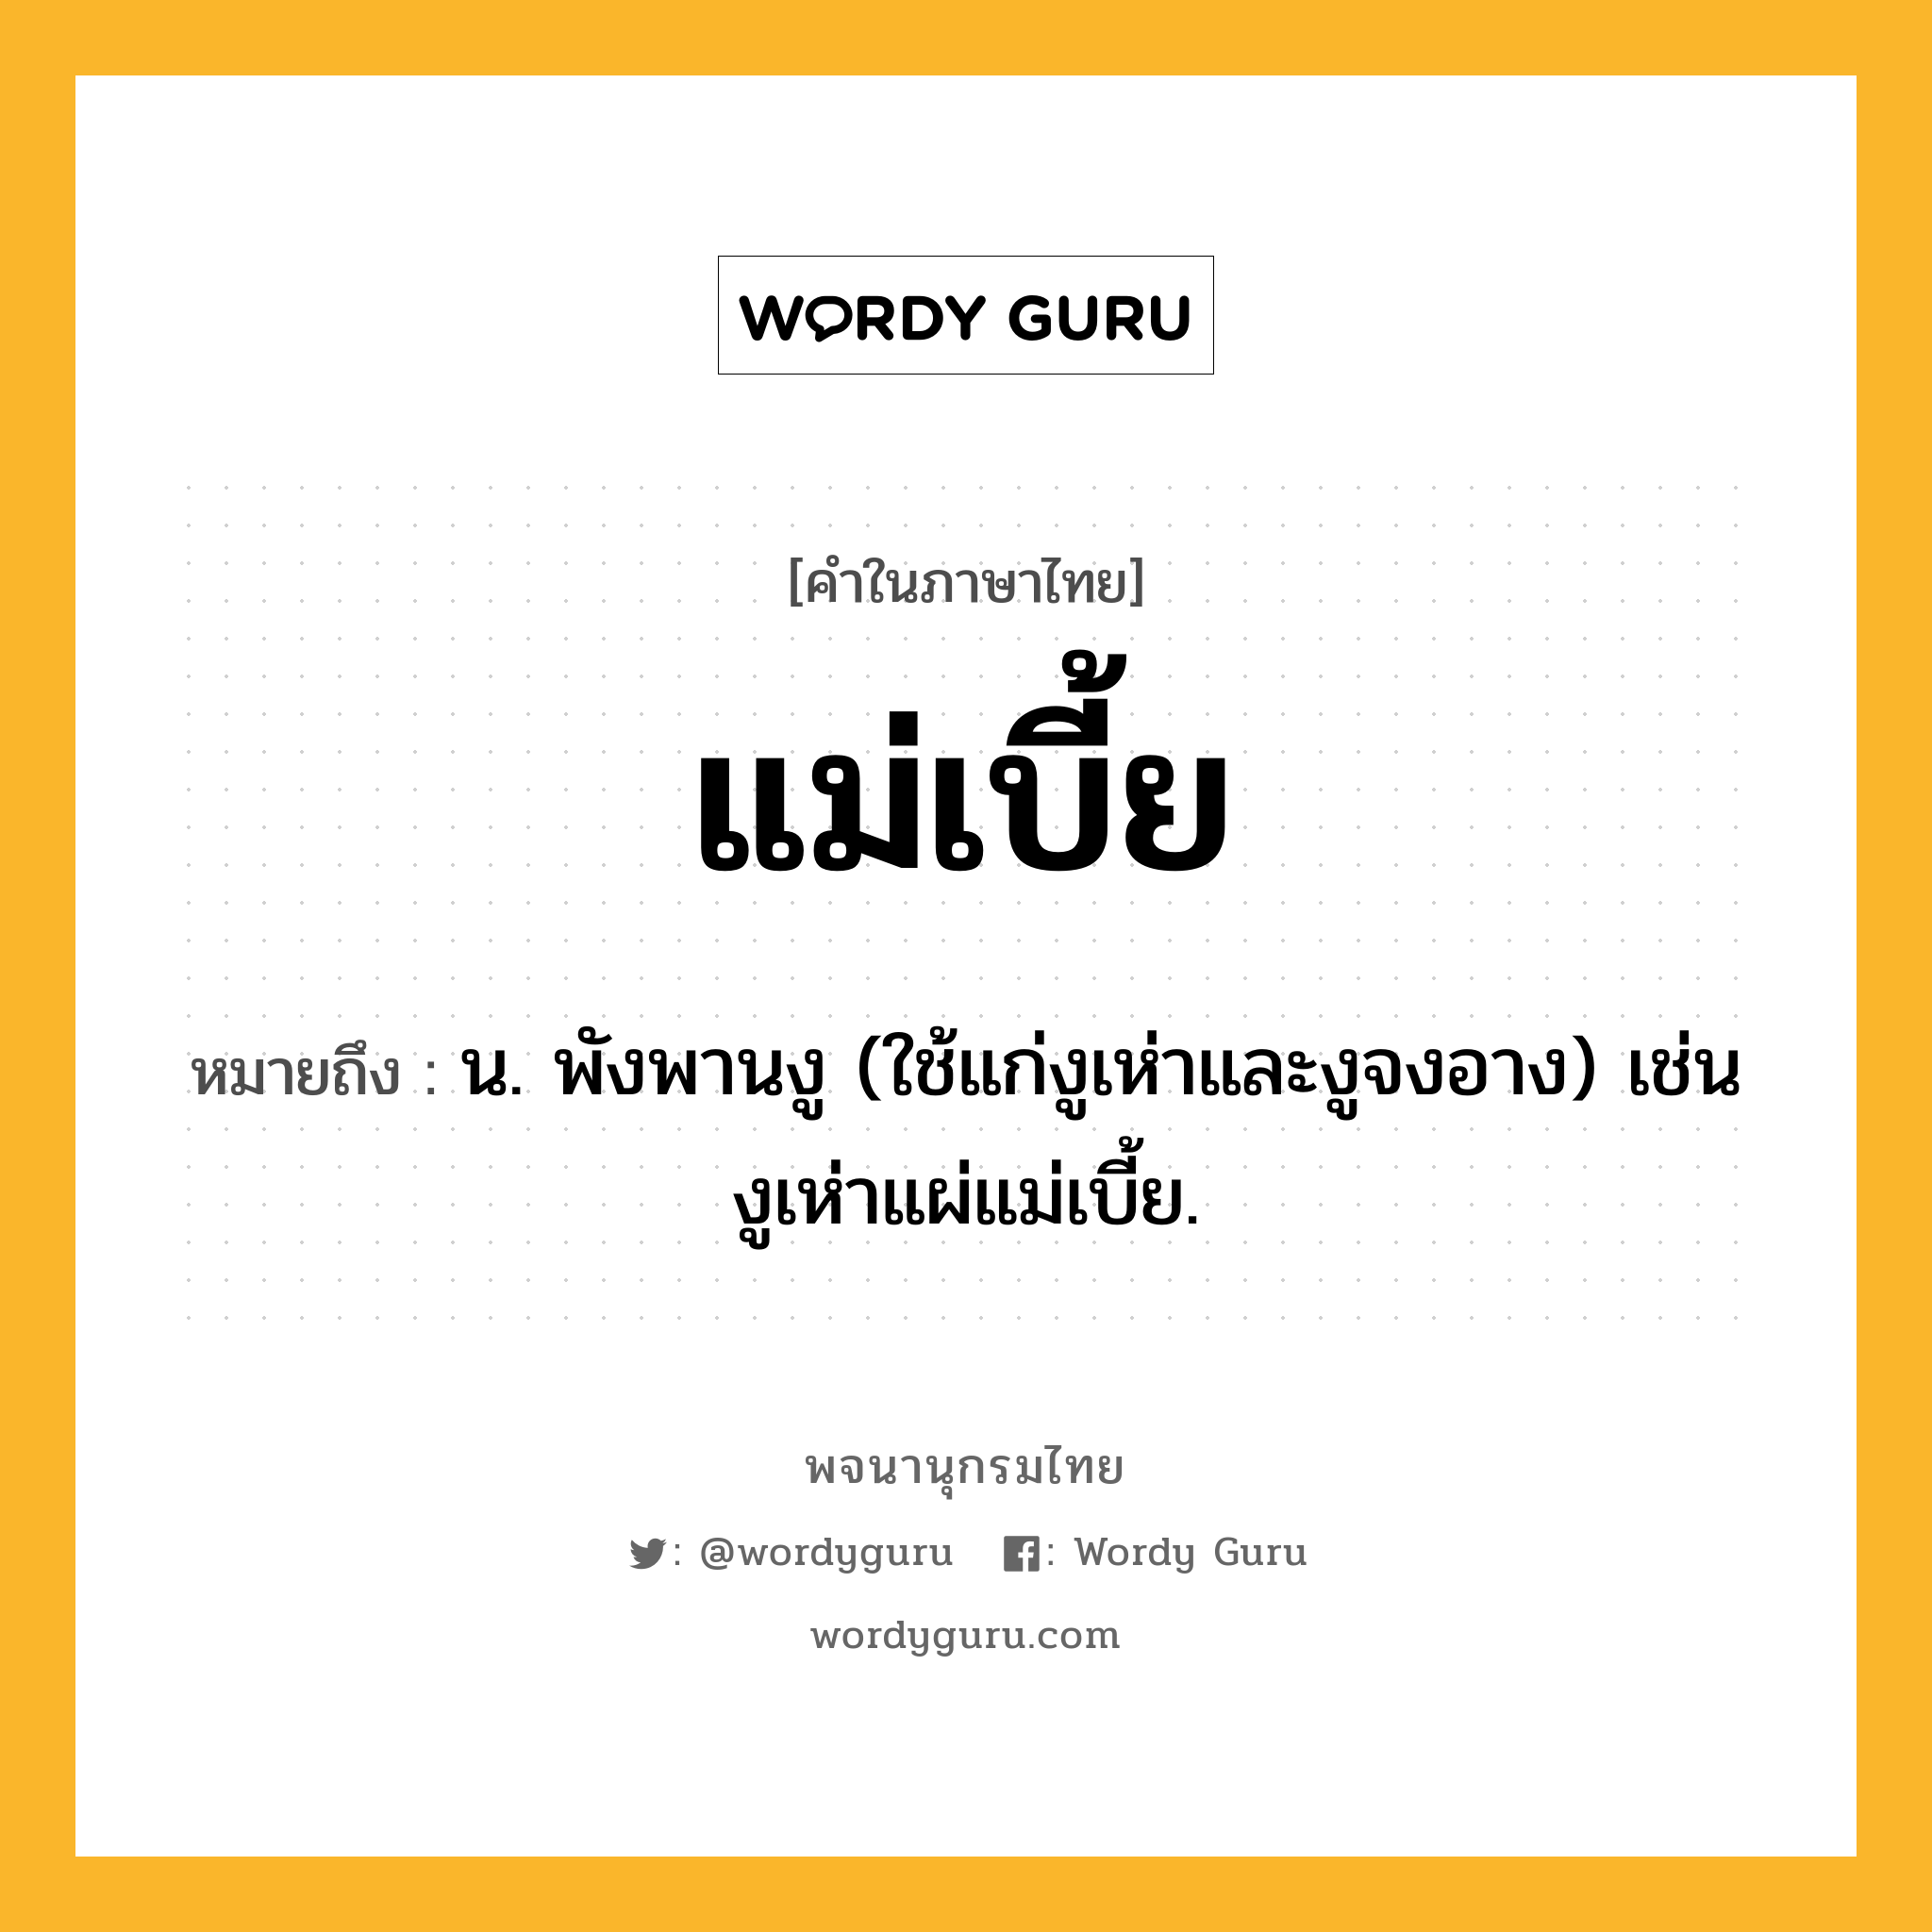 แม่เบี้ย ความหมาย หมายถึงอะไร?, คำในภาษาไทย แม่เบี้ย หมายถึง น. พังพานงู (ใช้แก่งูเห่าและงูจงอาง) เช่น งูเห่าแผ่แม่เบี้ย.